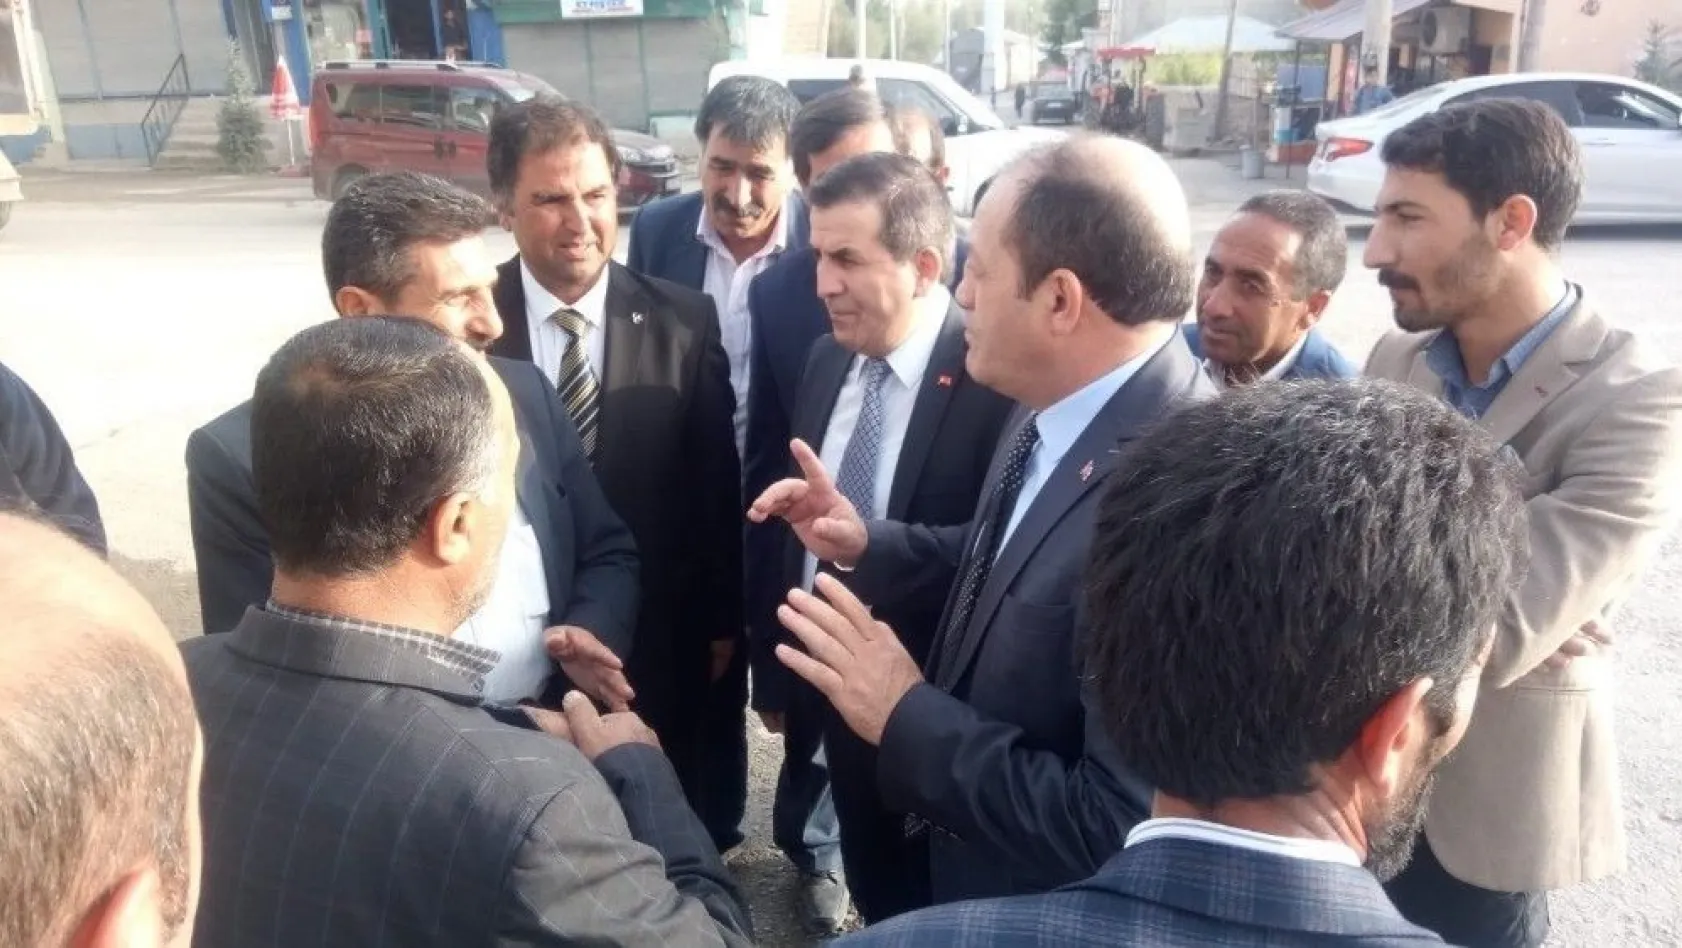 MHP Erzurum İl Teşkilatı, Karayazı, Hınıs ve Karaçoban'a çıkarma yaptı
